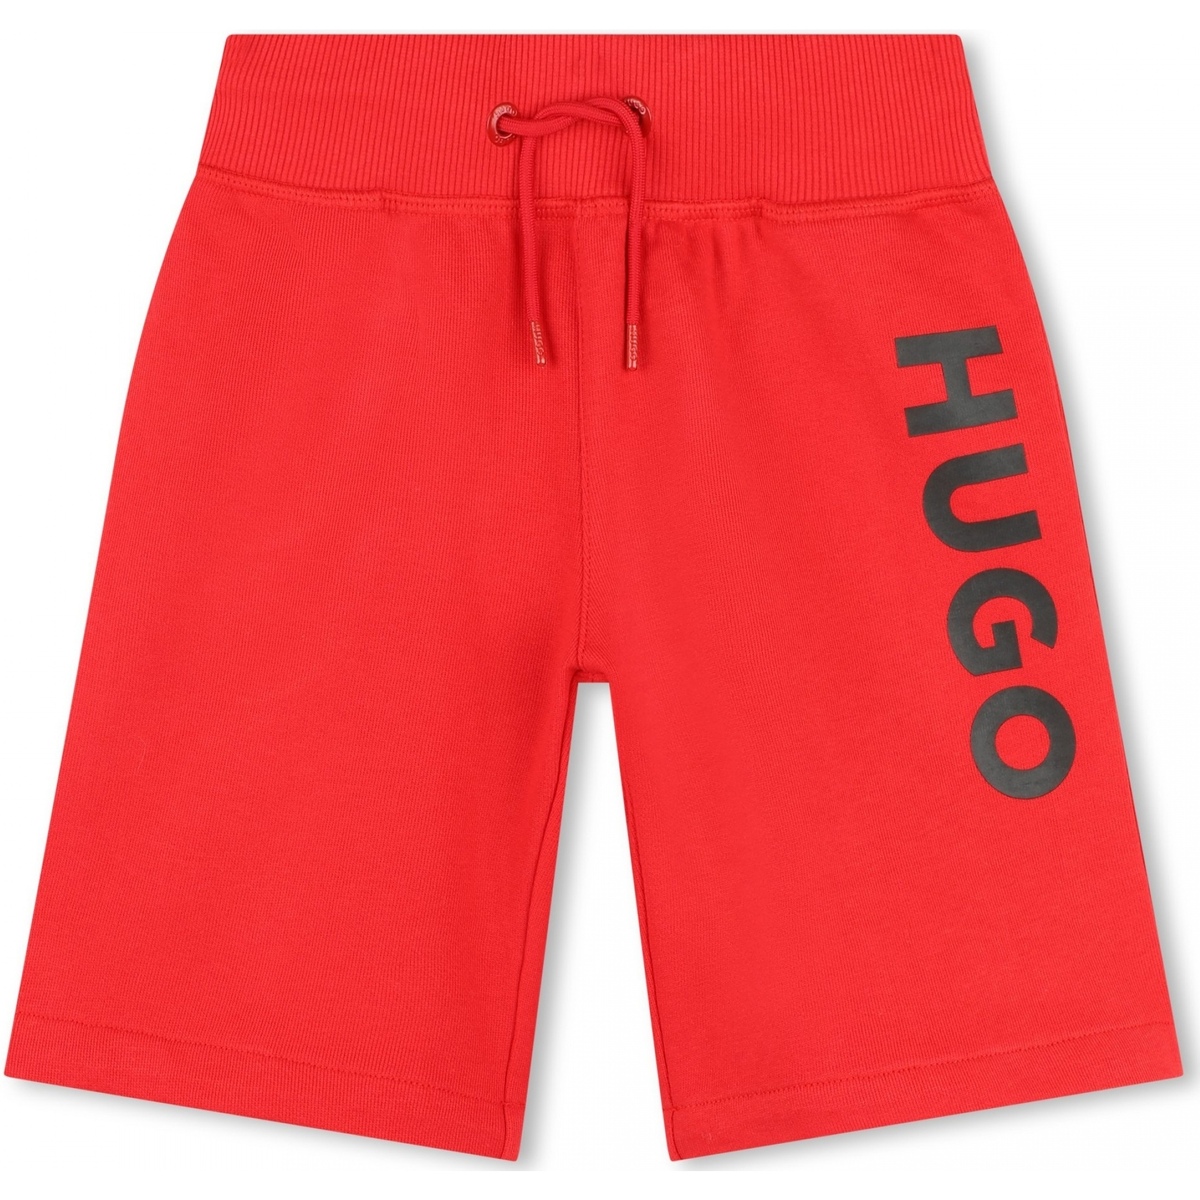 Vêtements Garçon mens lee clothing shorts Bermuda garçon taille élastique Rouge